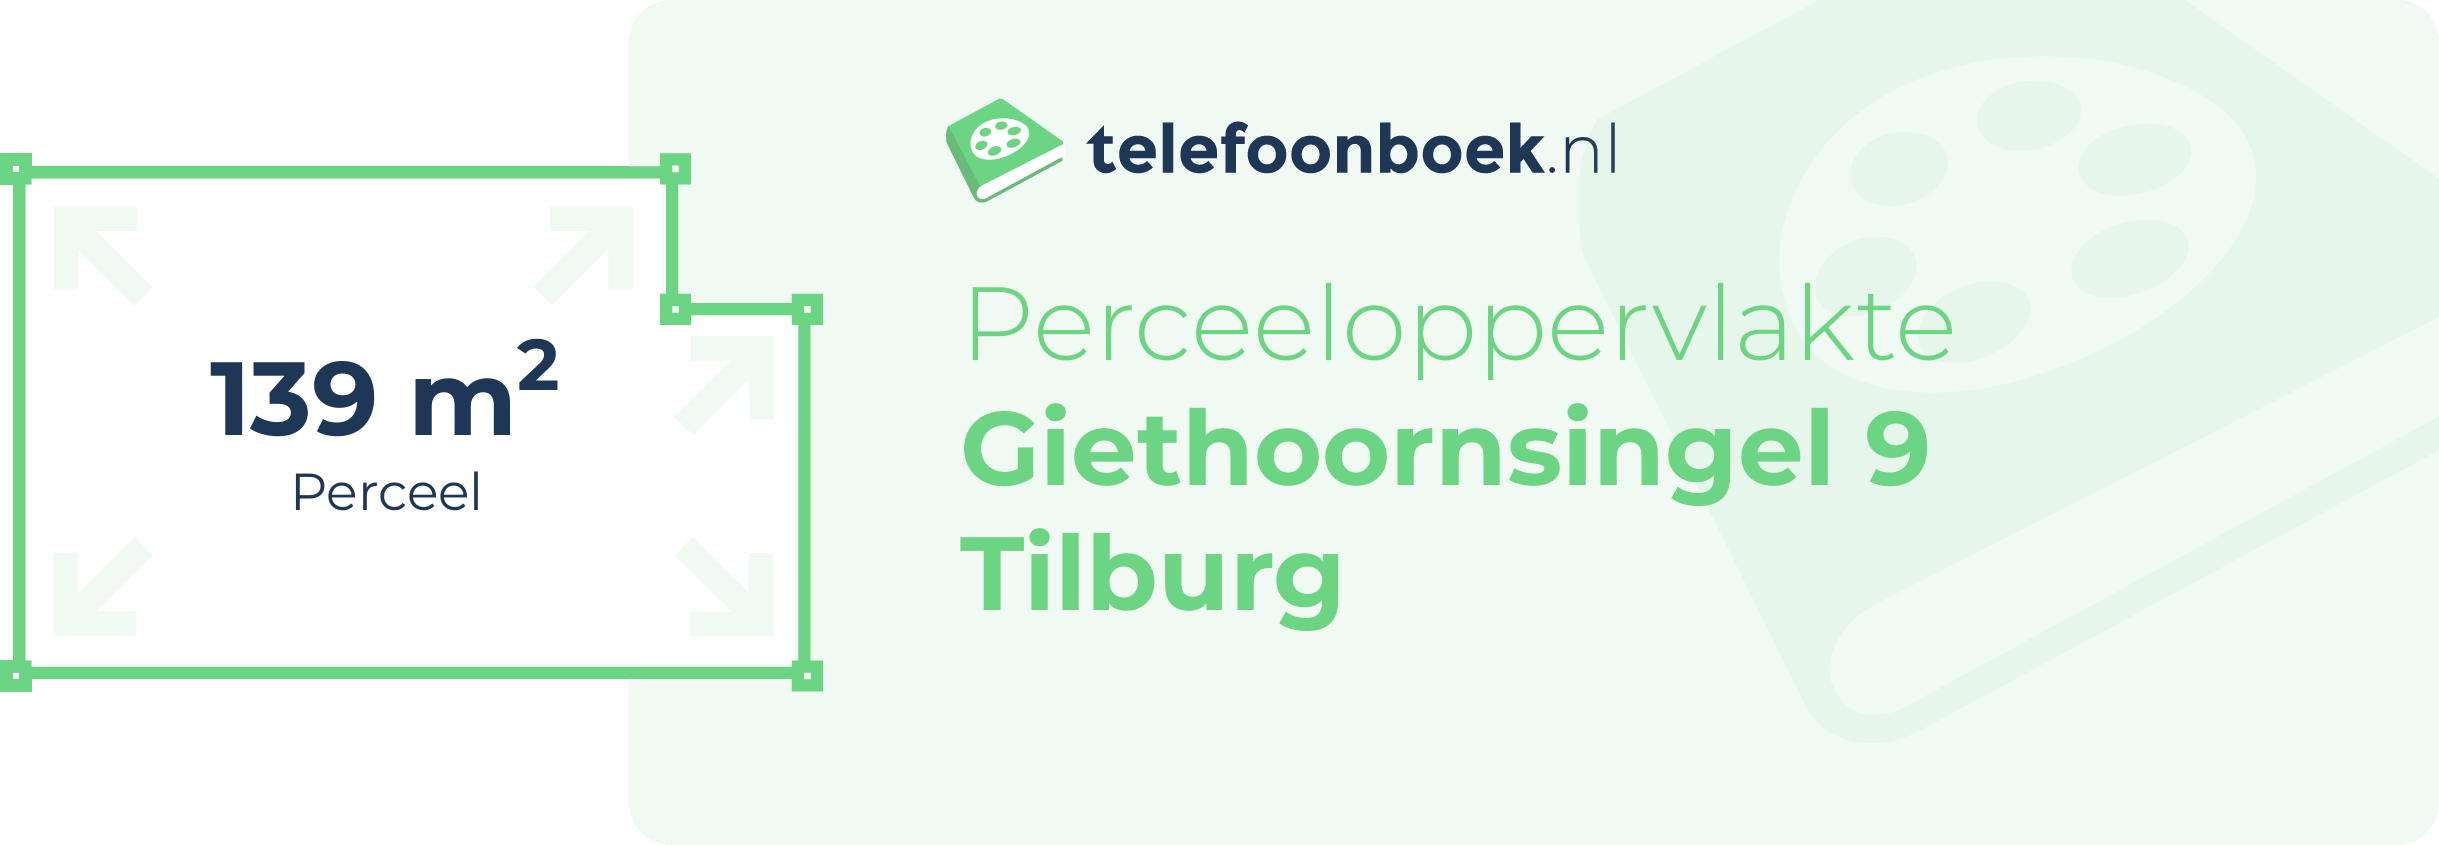 Perceeloppervlakte Giethoornsingel 9 Tilburg